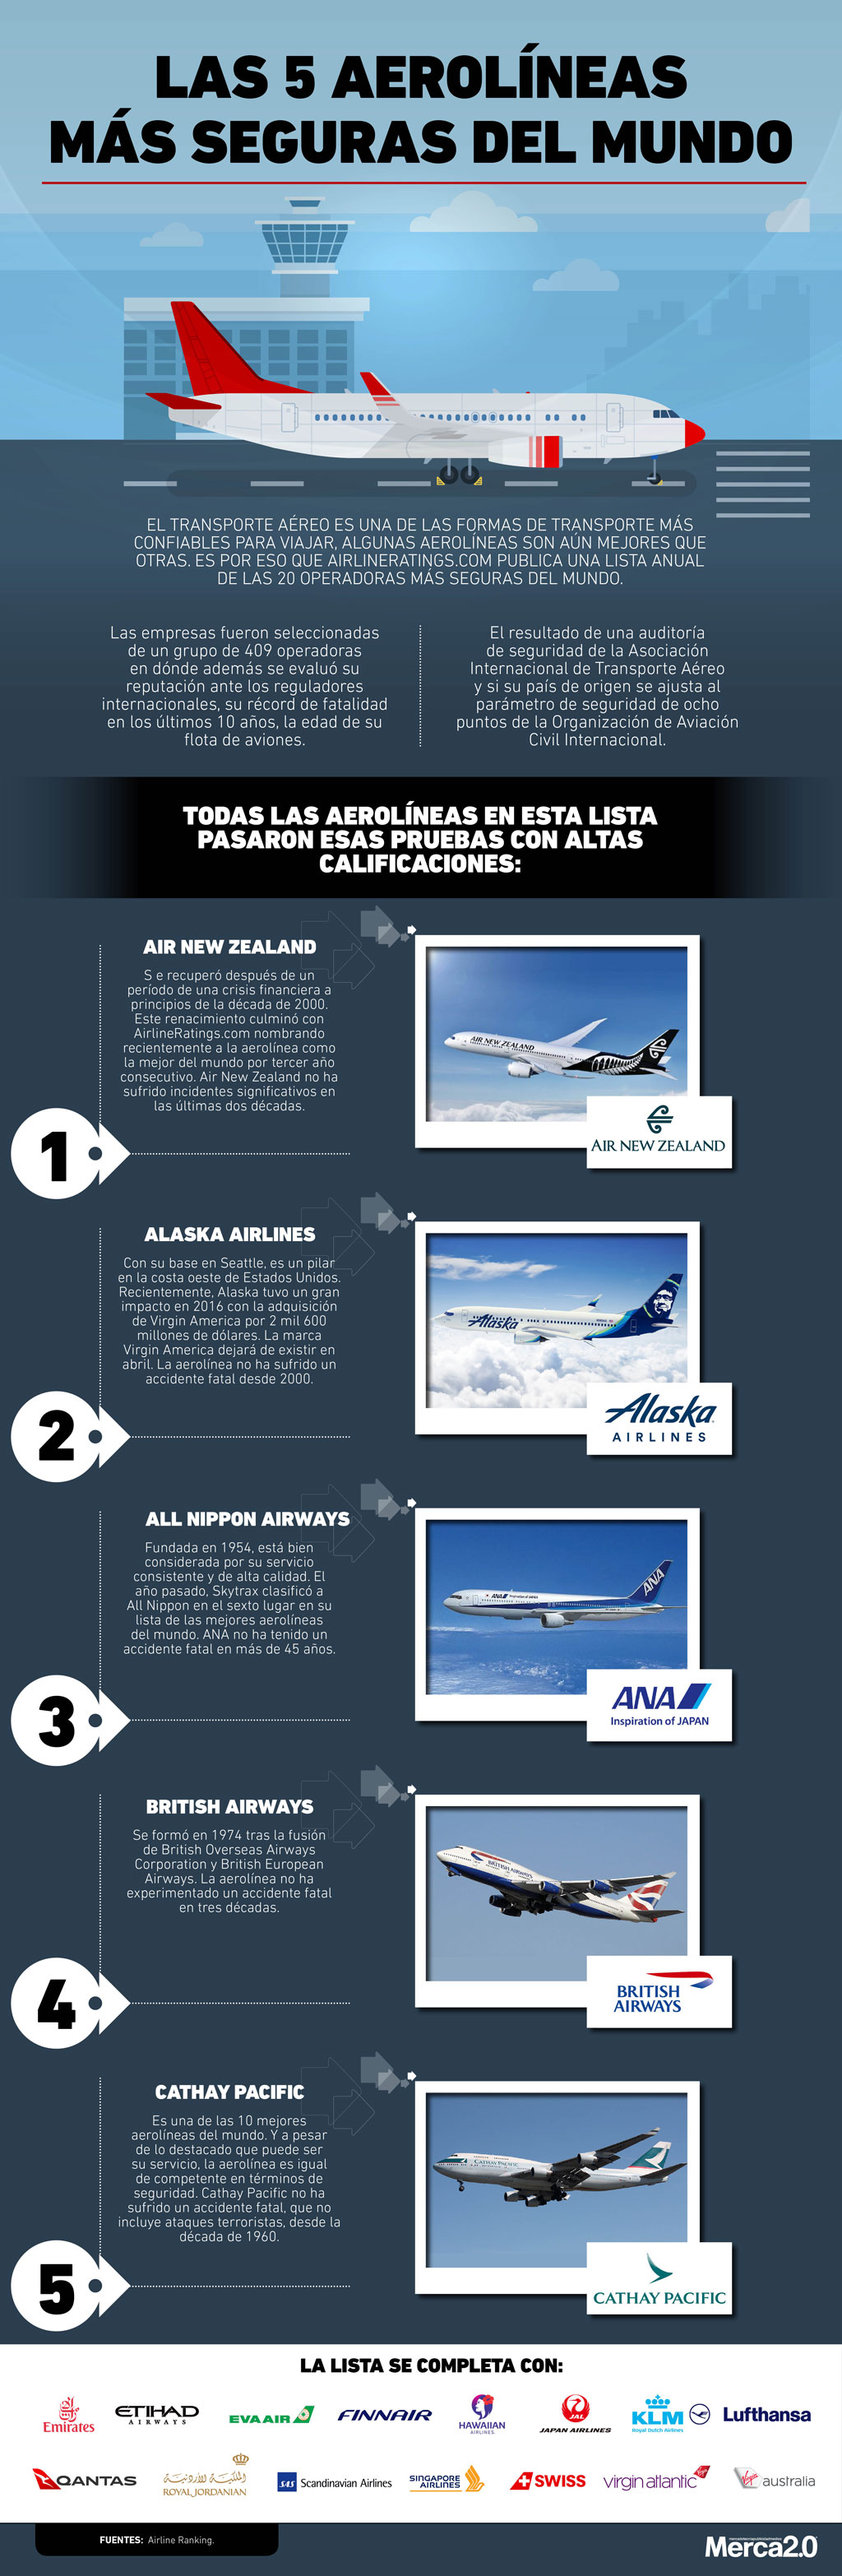 infografía aerolíneas más seguras